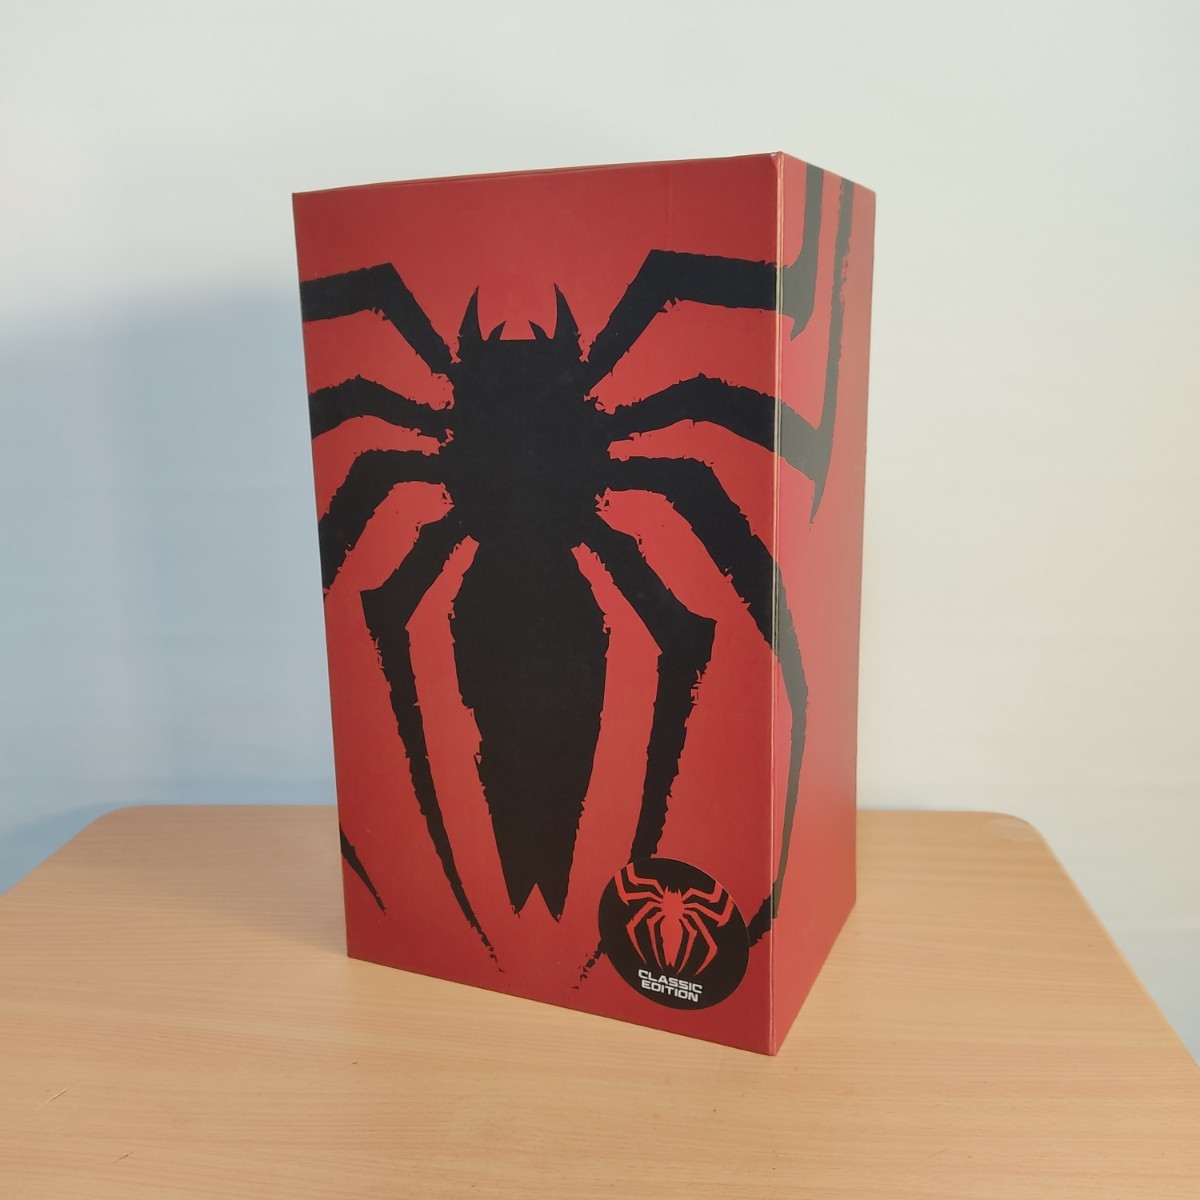 公式サイト spiderman スパイダーマン Threea ashleywood hottoys フィギュア 1/6 - アメコミ -  reachahand.org